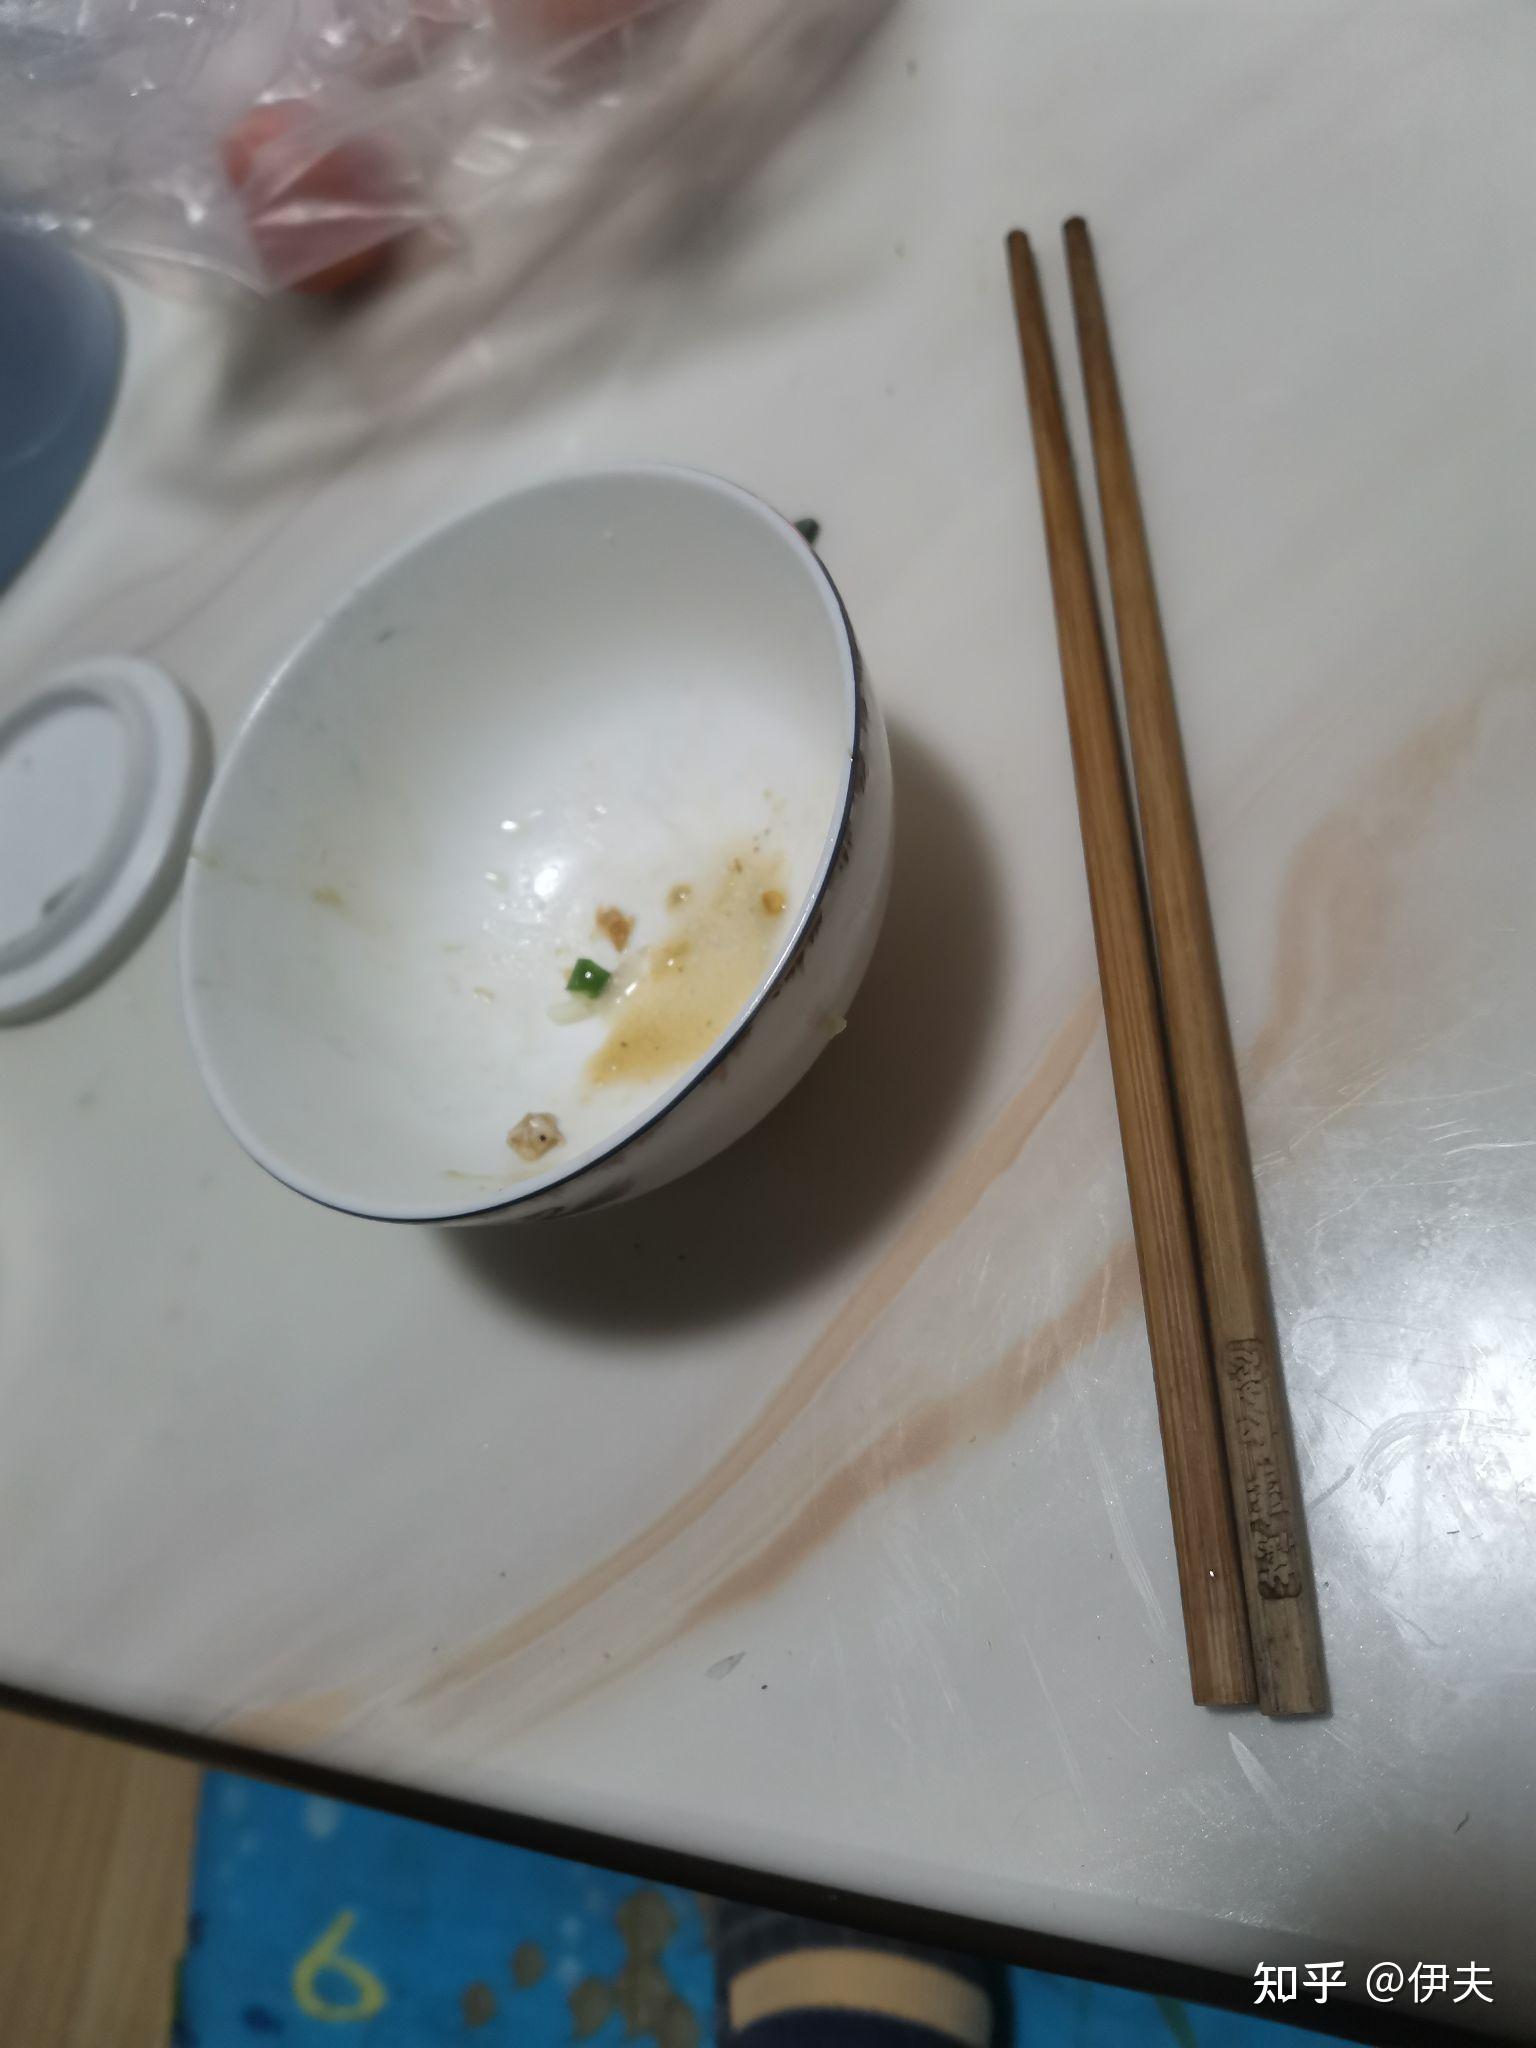 为什么吃过饭后筷子不可放在碗上面